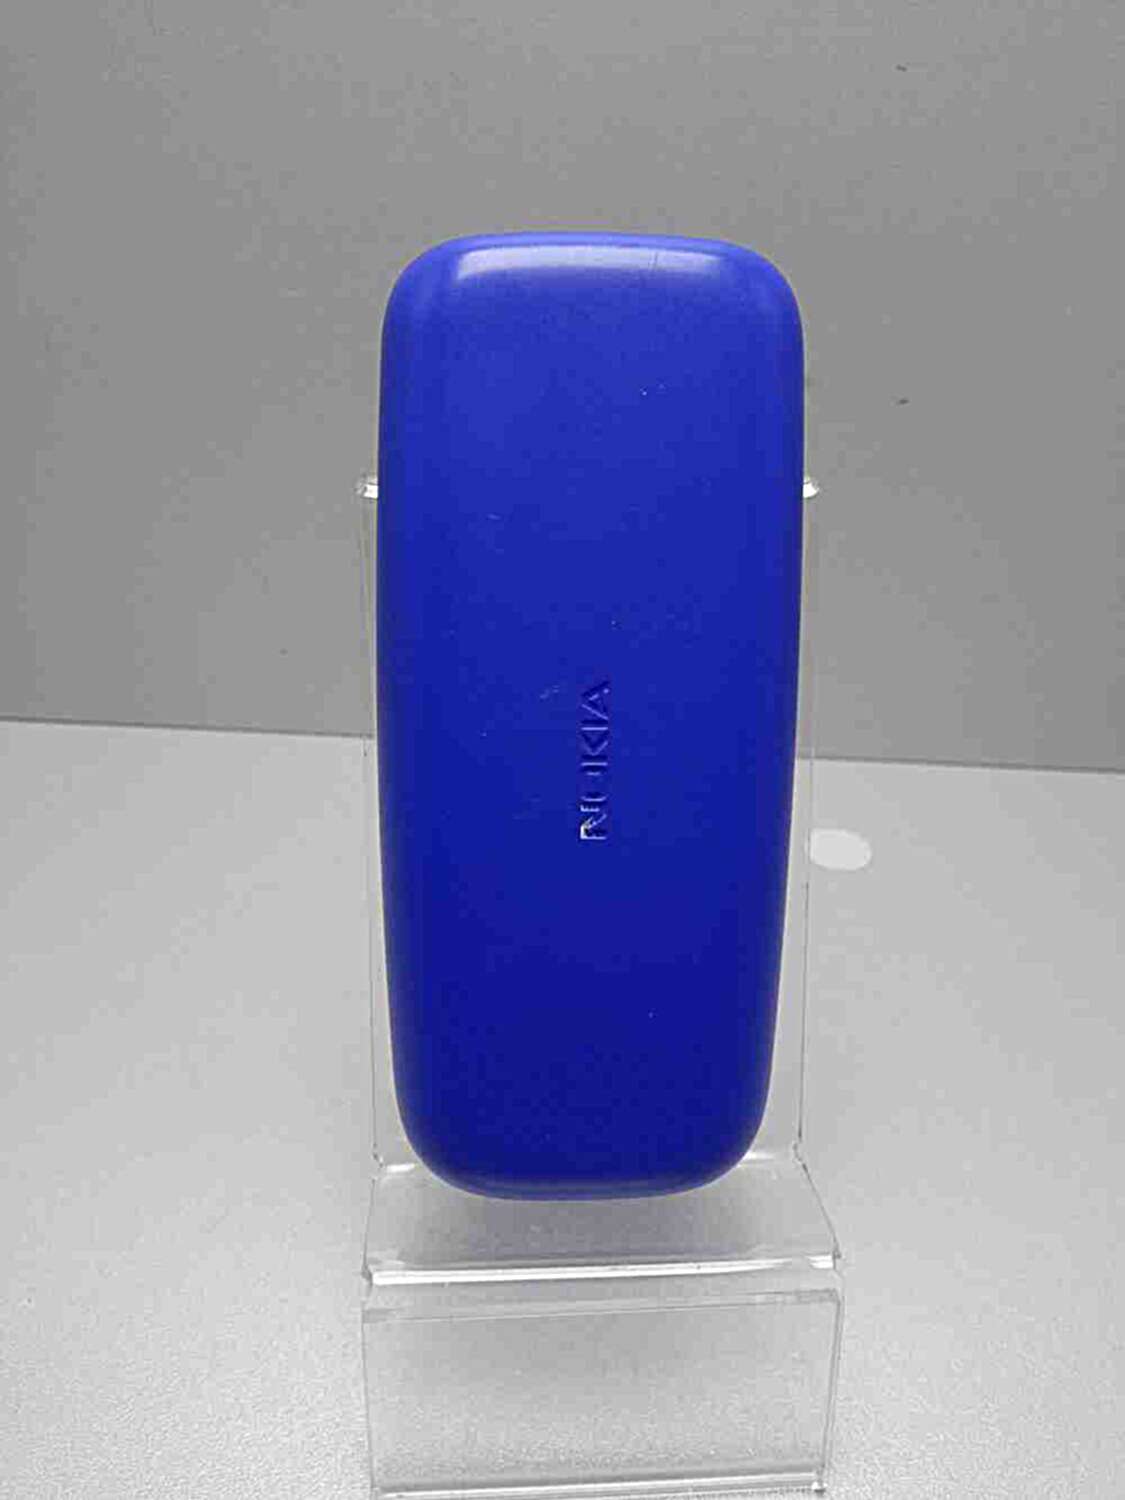 Nokia 105 (TA-1174) 5